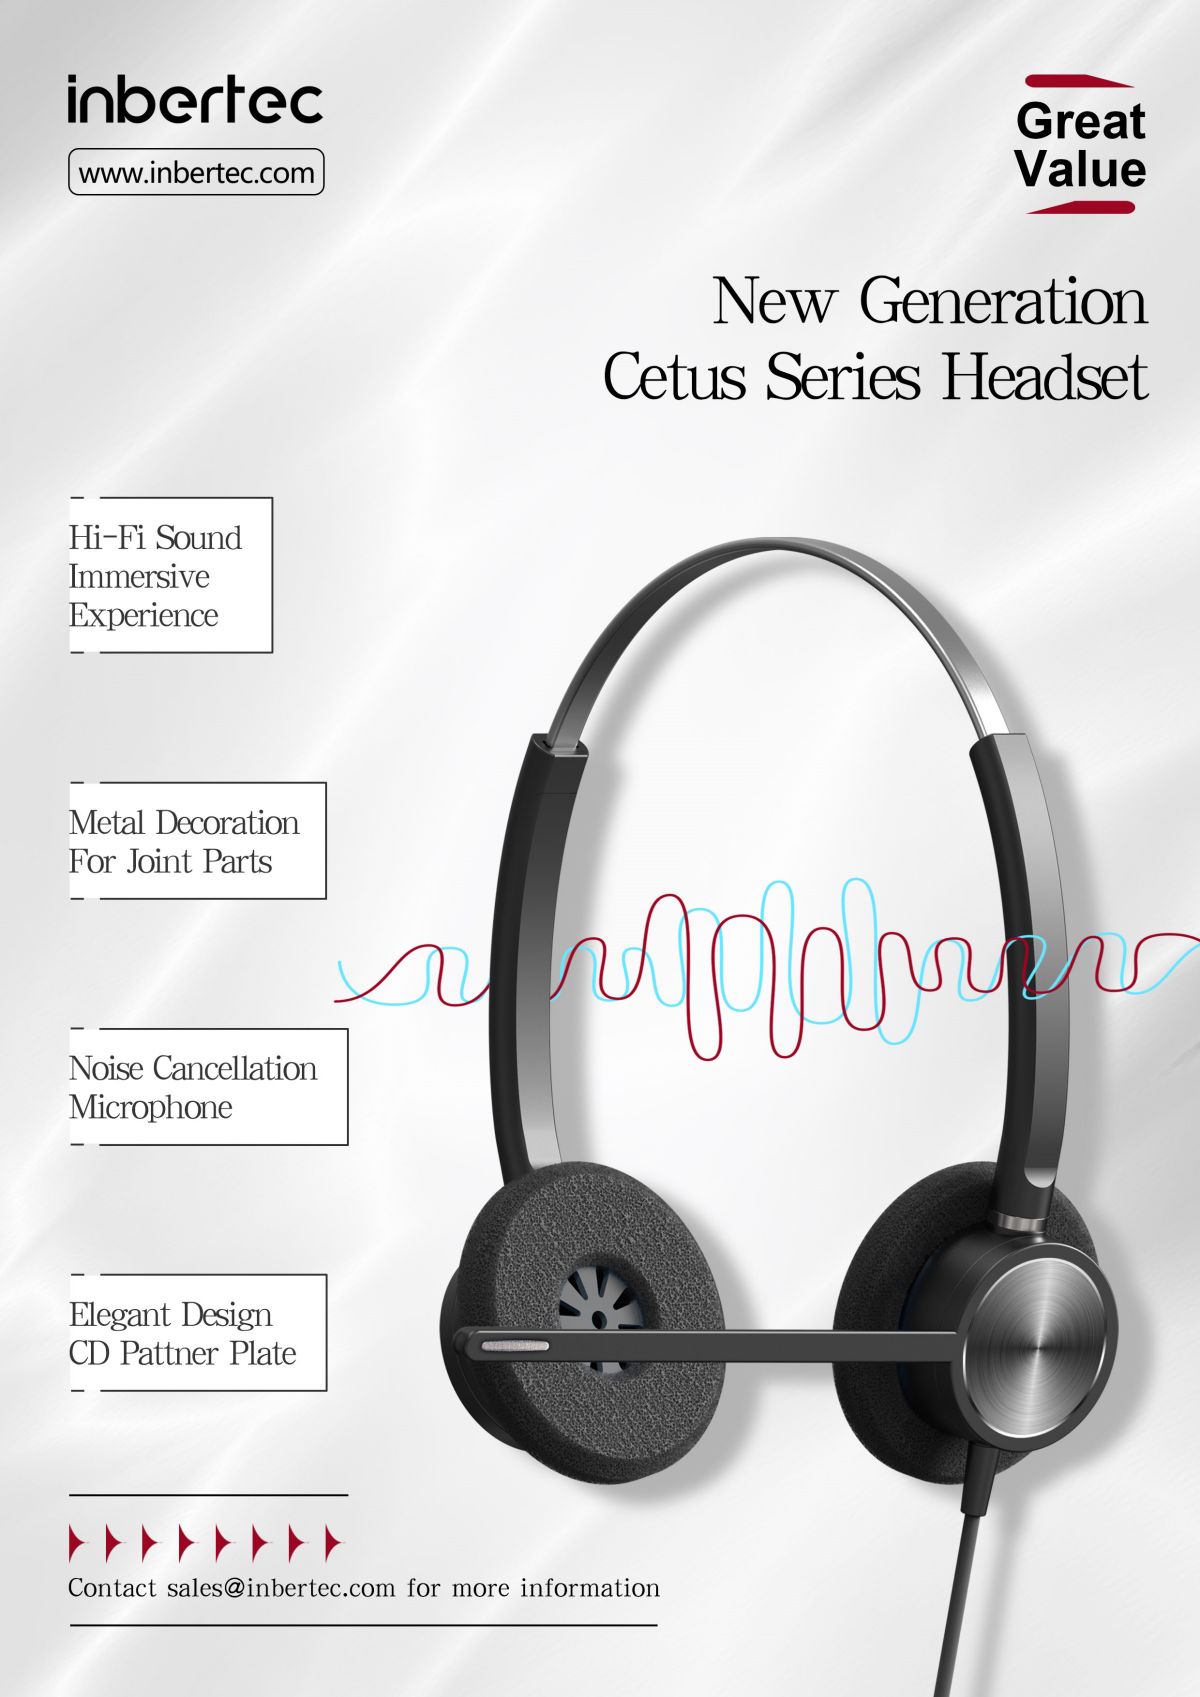 noise-canceling-headset-features-inbertec-c10